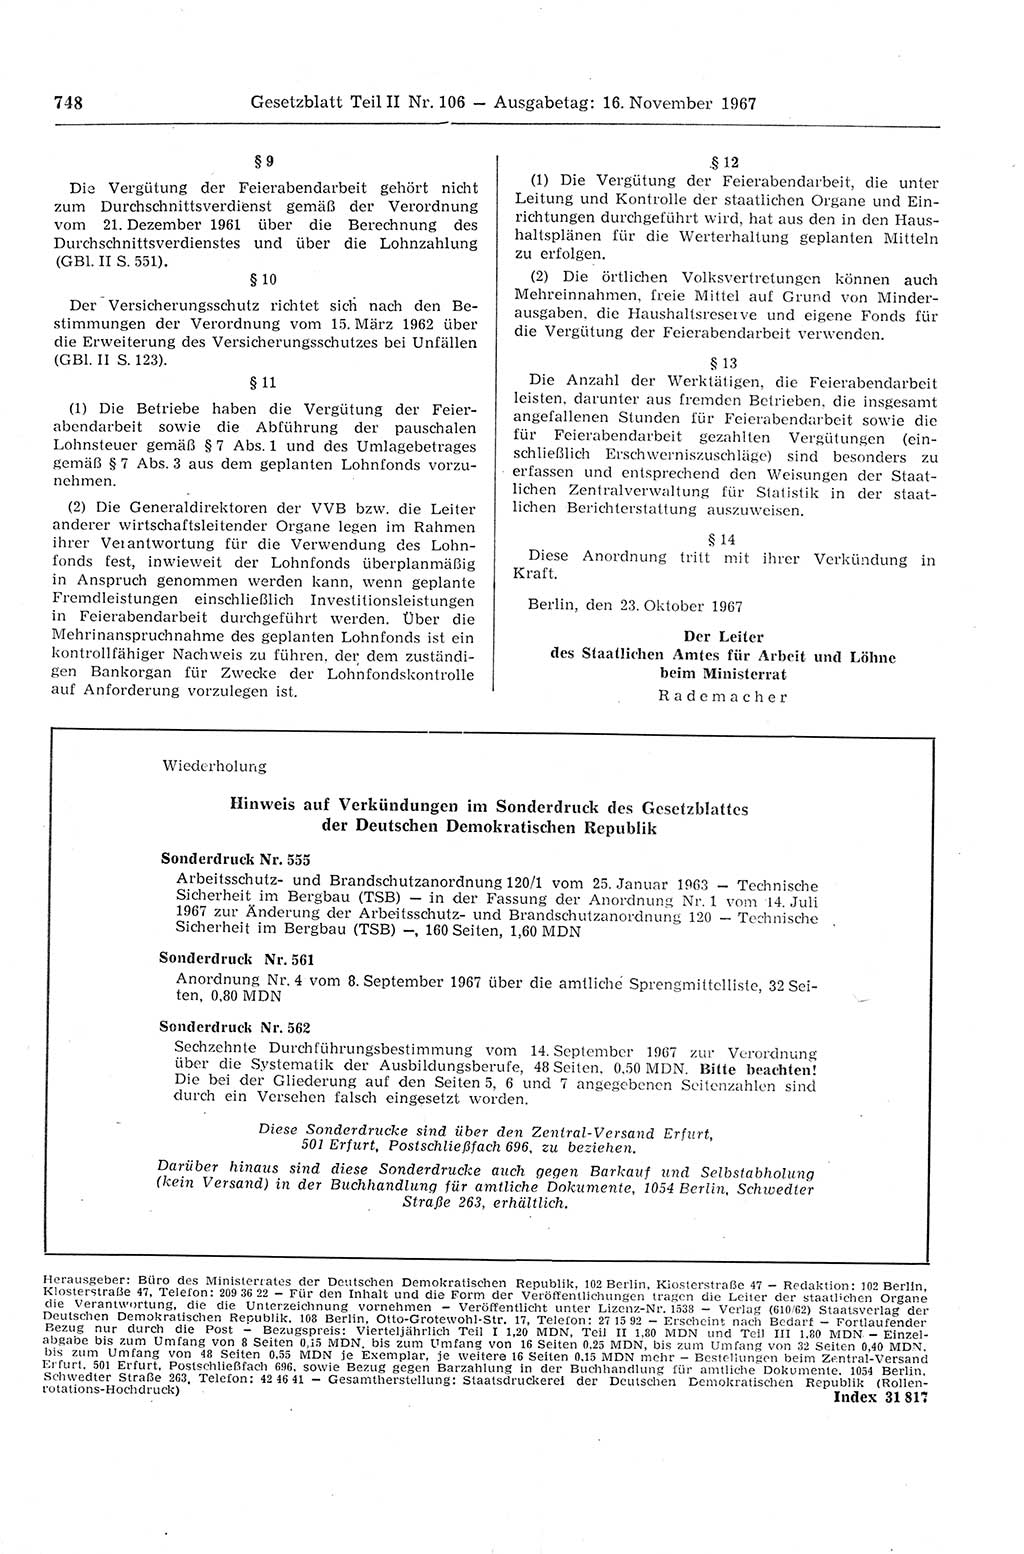 Gesetzblatt (GBl.) der Deutschen Demokratischen Republik (DDR) Teil ⅠⅠ 1967, Seite 748 (GBl. DDR ⅠⅠ 1967, S. 748)